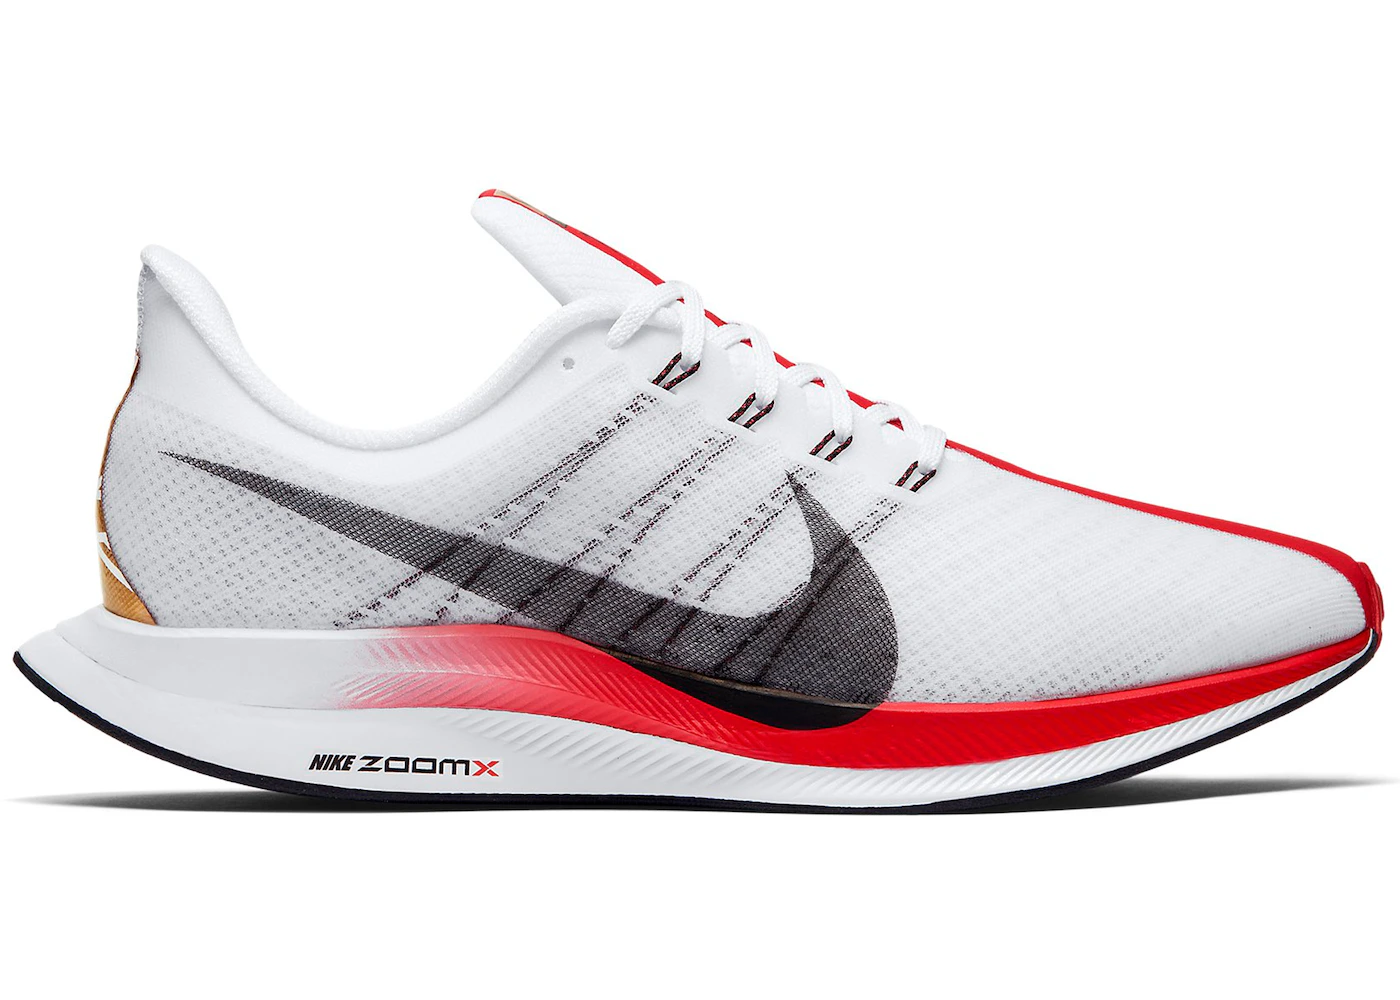 Gymnast Analytisch overschreden Nike Zoom Pegasus 35 Turbo London Marathon (2019) - CQ6436-100 - US